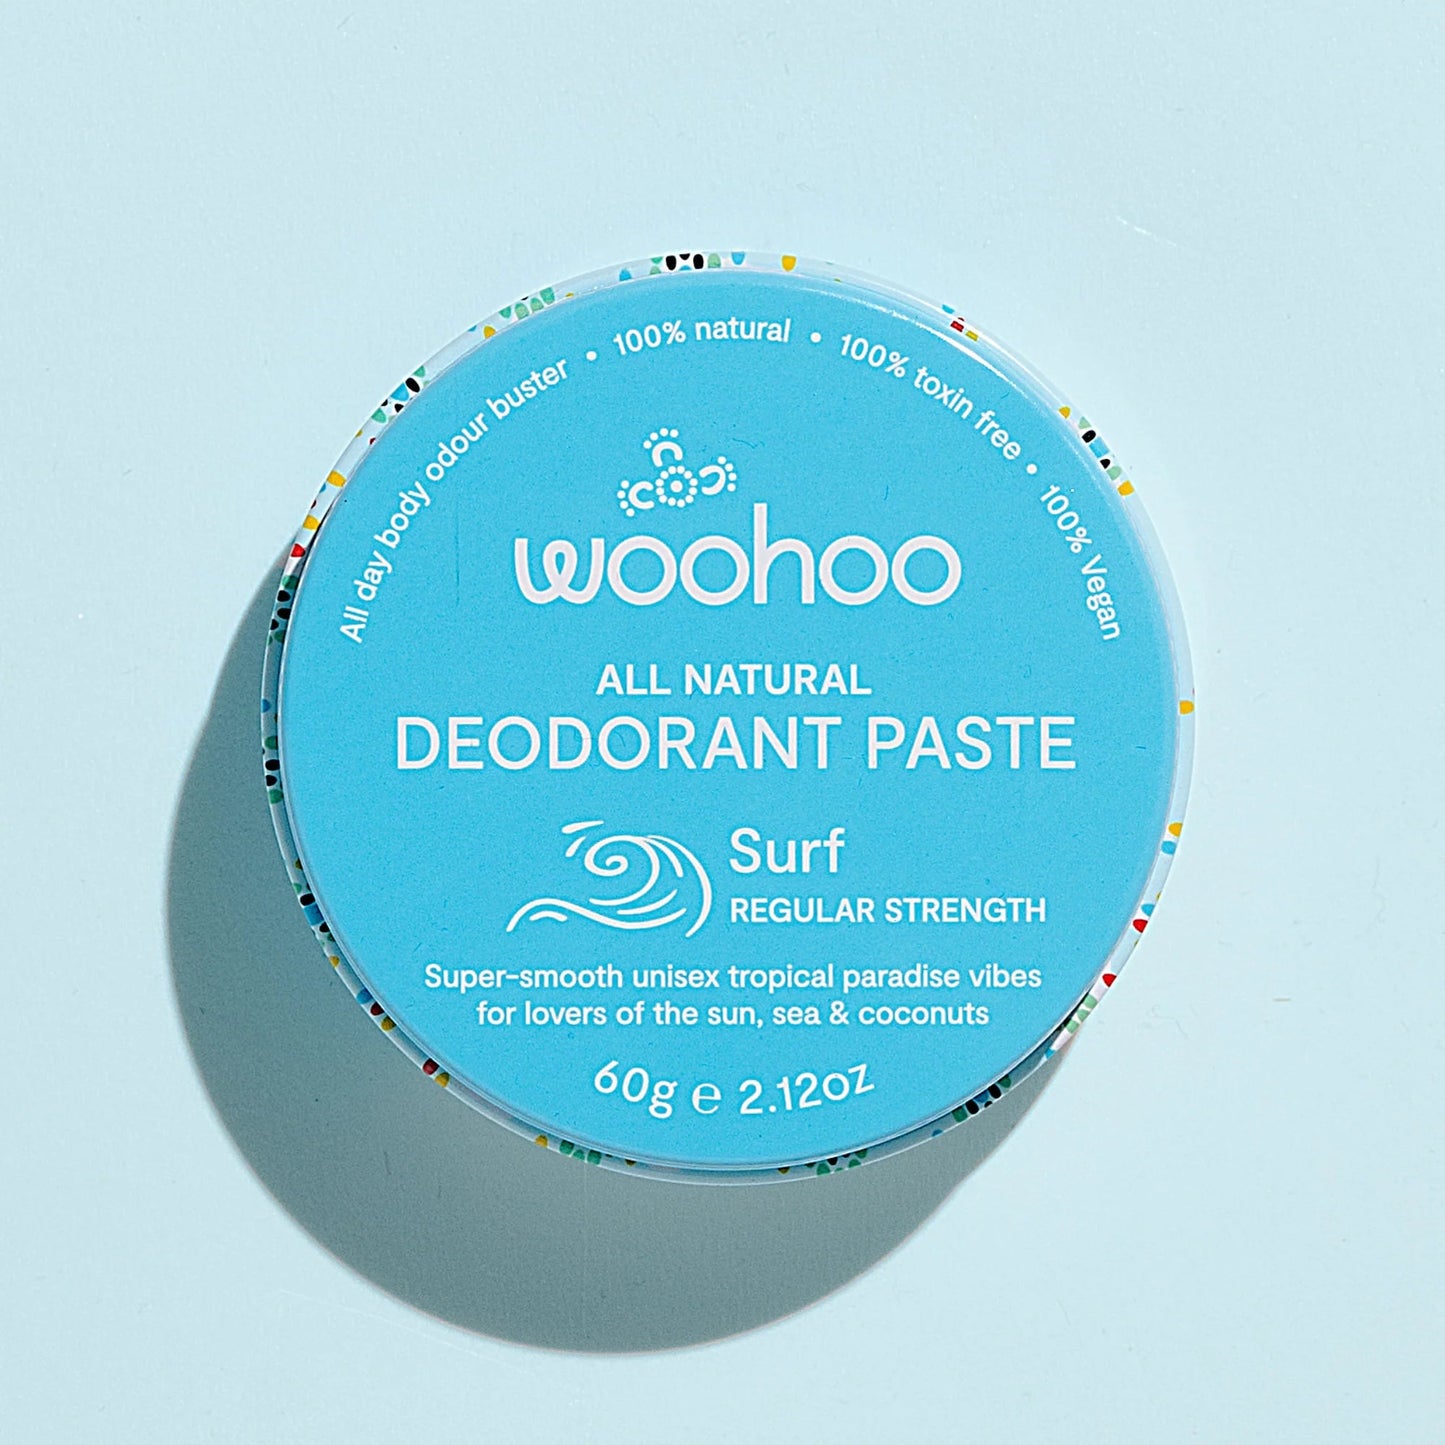 Woohoo All Natural Deodorant Paste (Surf) 60g - #shop_name - -WOOHOO